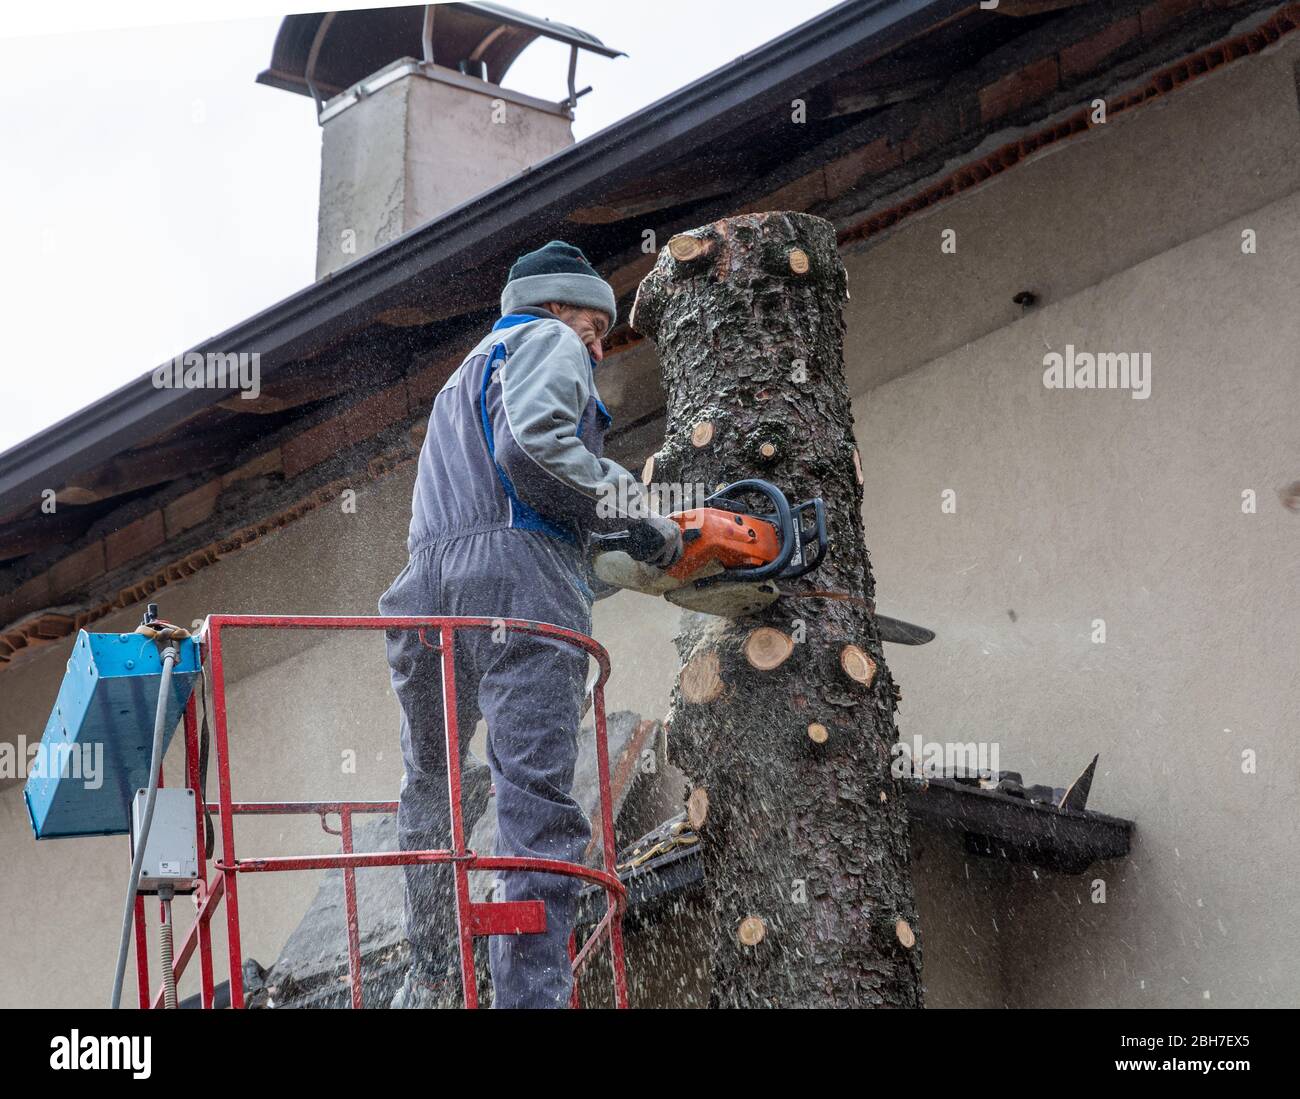 Professioneller Gärtner schneidet einen faulen Baum in einem Hausgarten mit einer Kettensäge ab Stockfoto